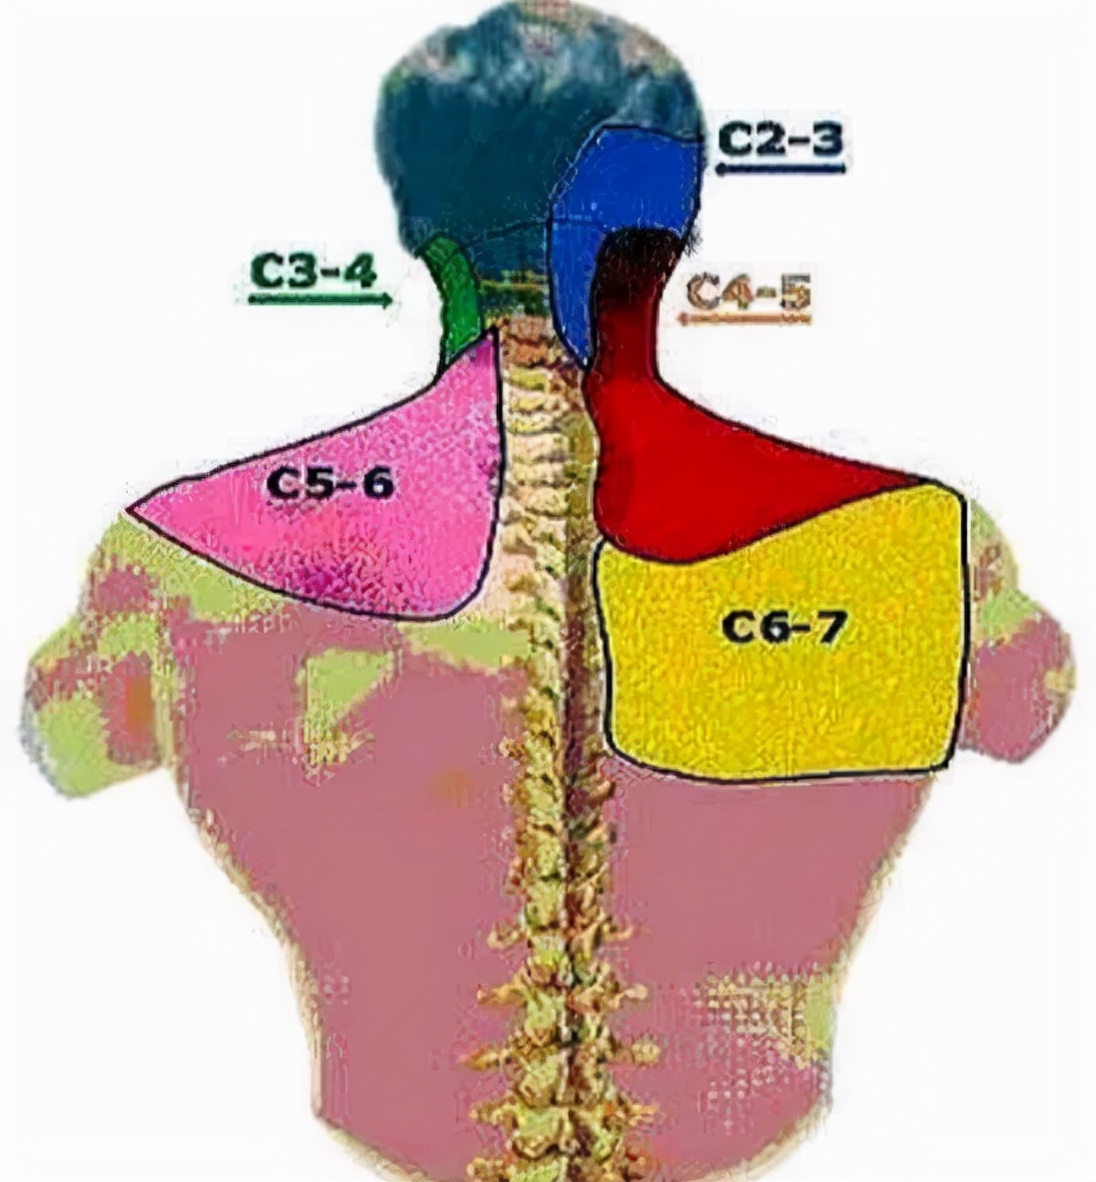 后背痛位置图详解图片